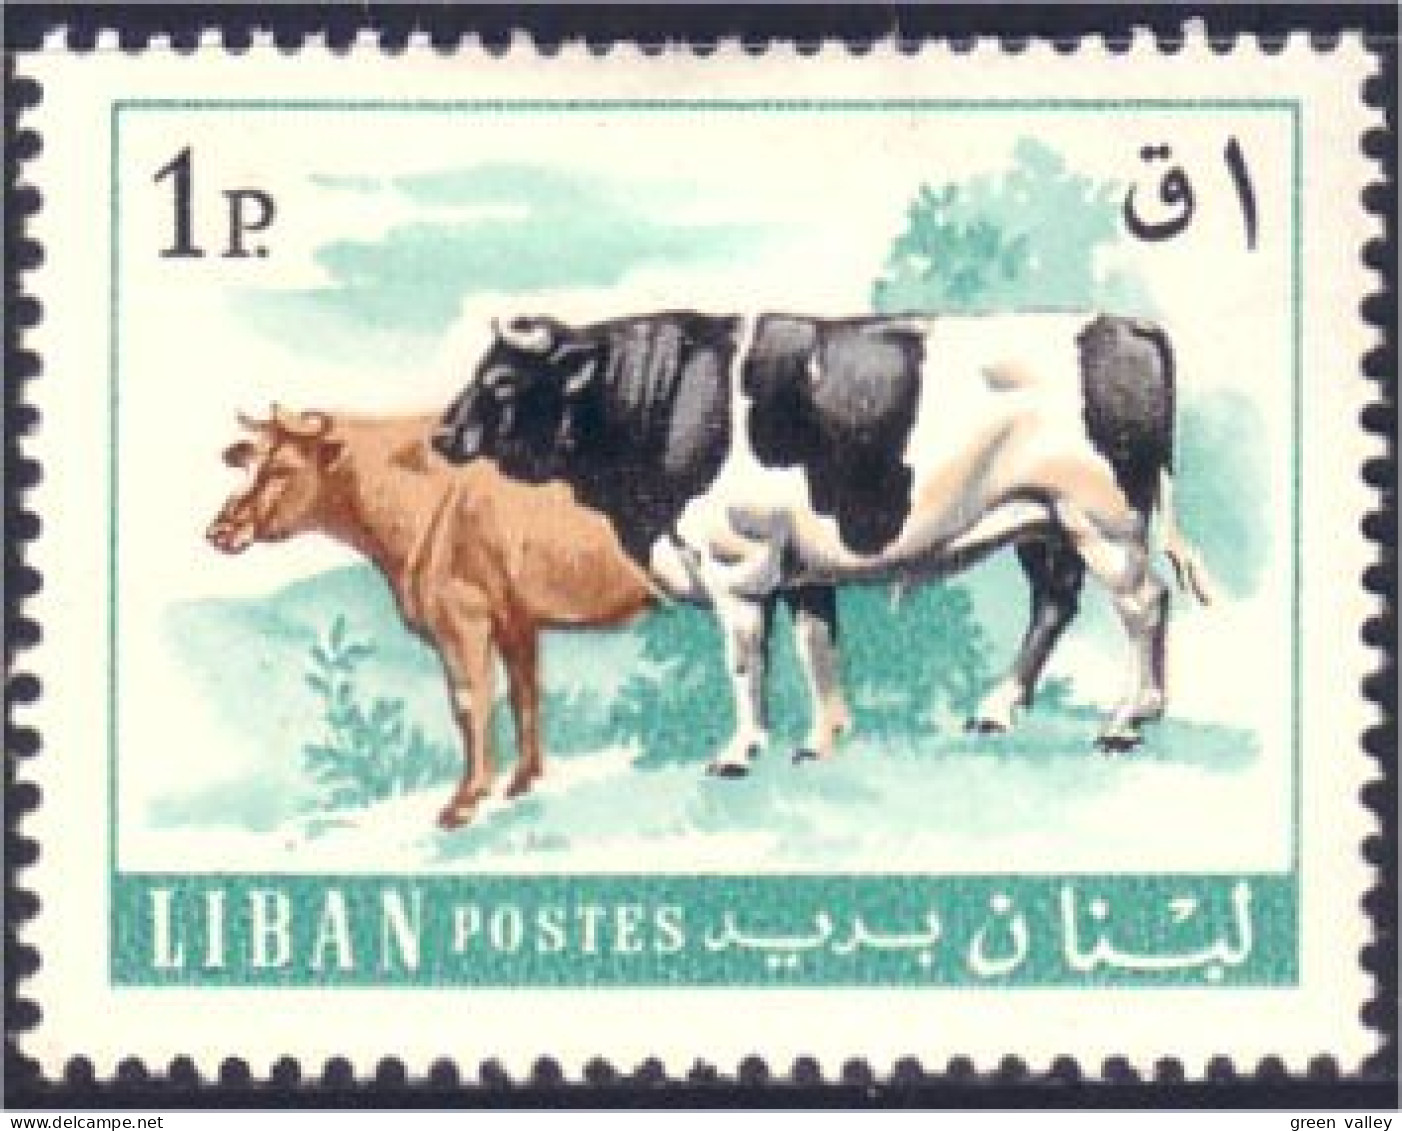 566 Liban Cattle Bull Cow Vache Taureau MH * Neuf (LBN-74) - Boerderij